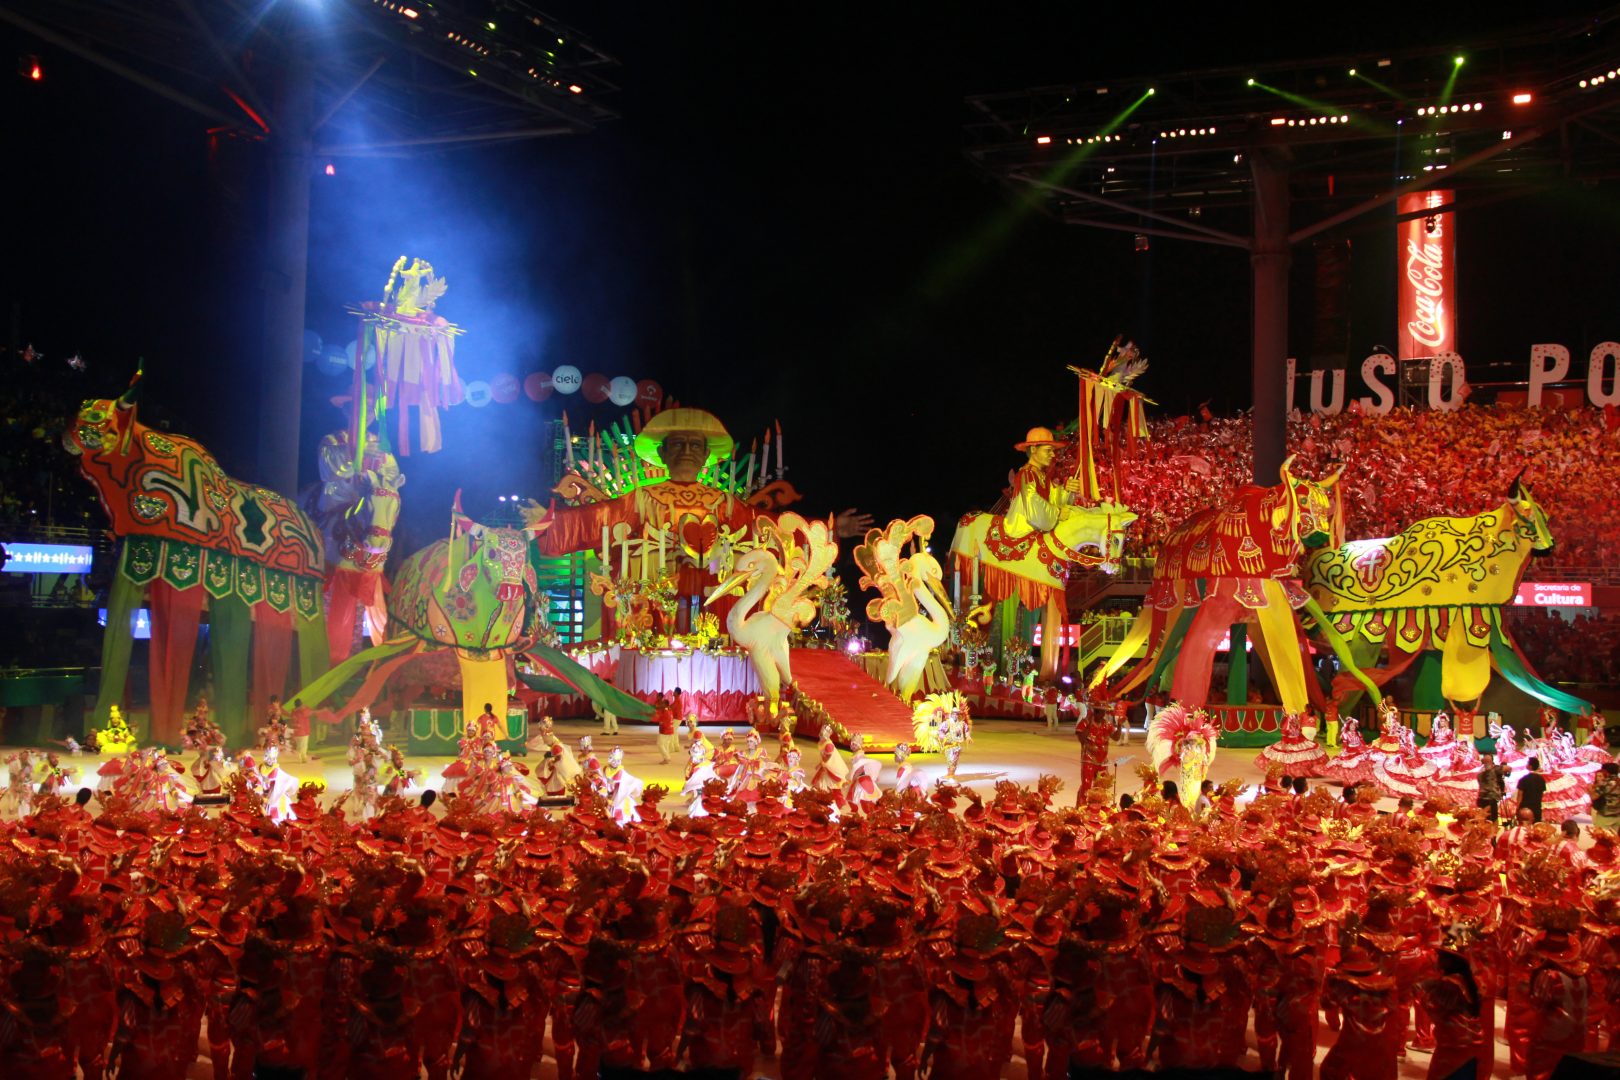 Foto de uma alegoria, com dançarinos performando em vermelho, e alguns bois gigantes de pano na cor vermelha